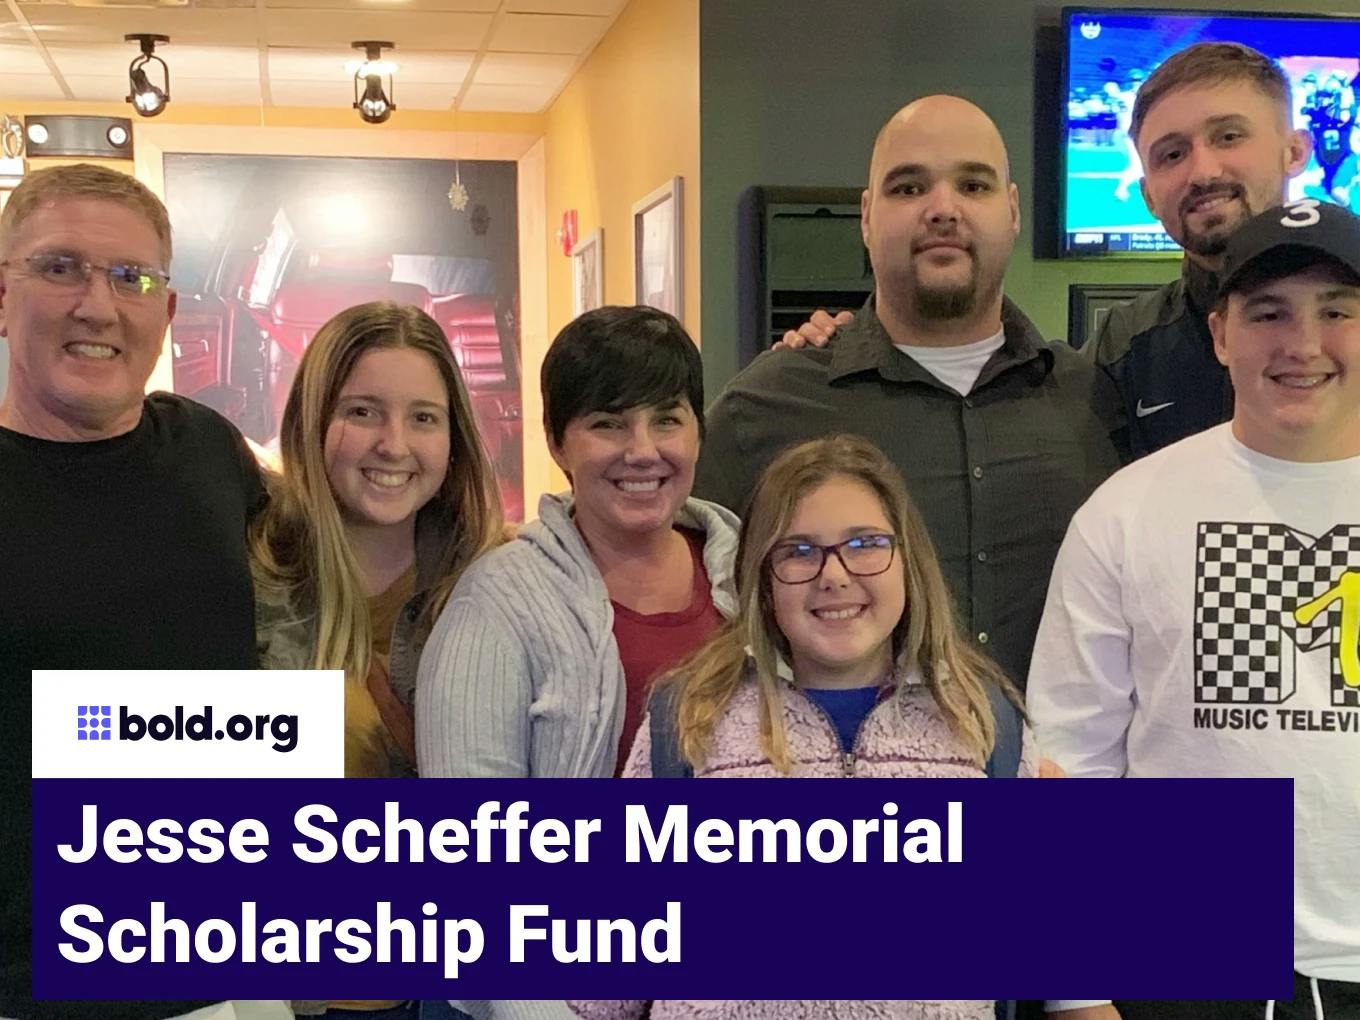 Jesse Scheffer Memorial Scholarship Fund